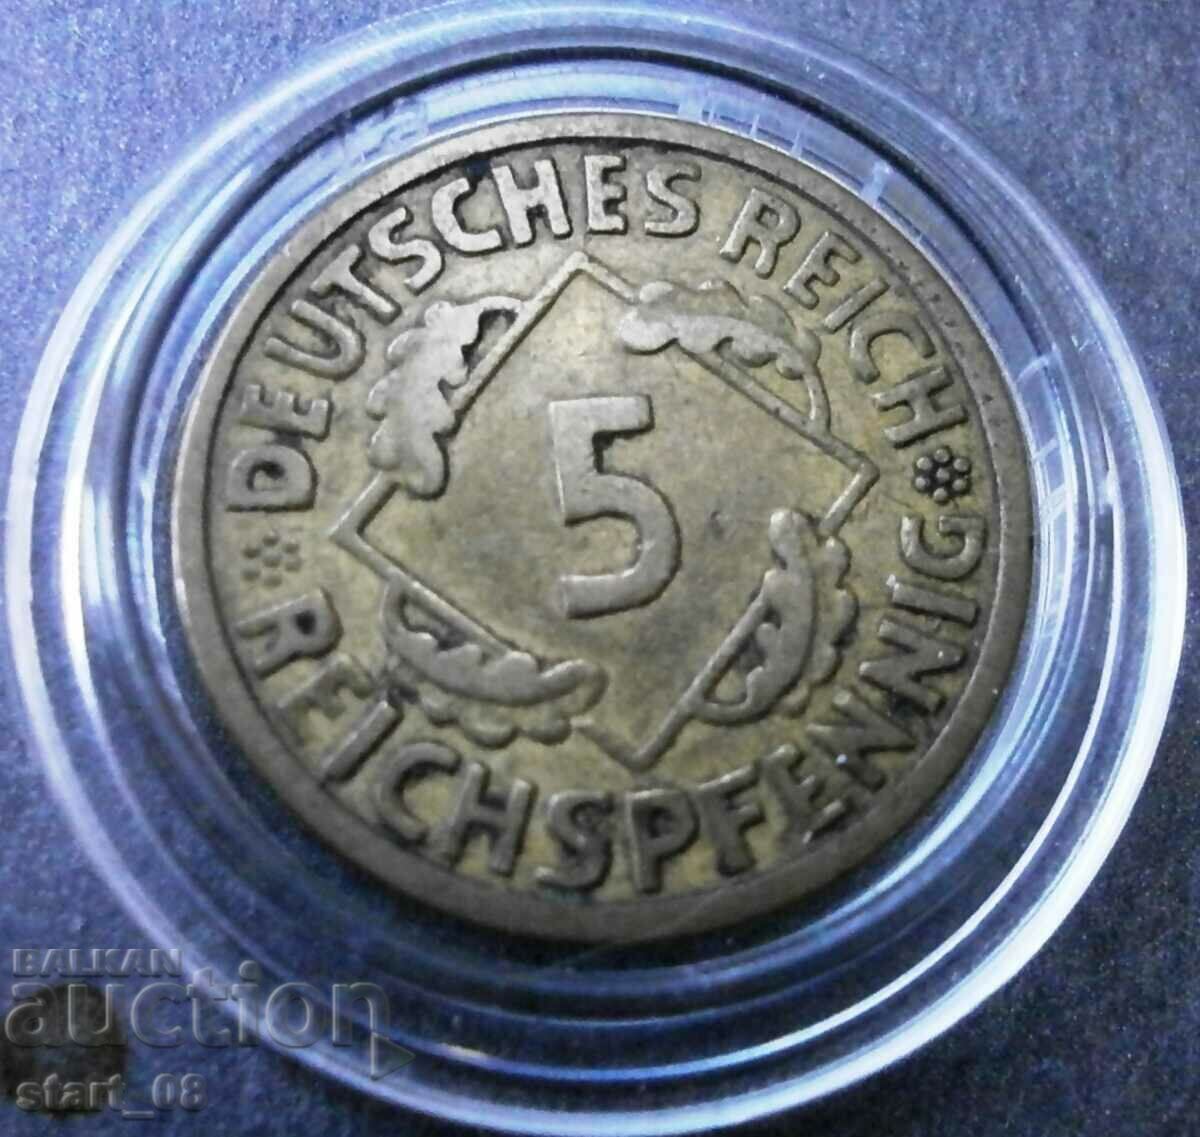 Germany 5 Reichspfenig 1925